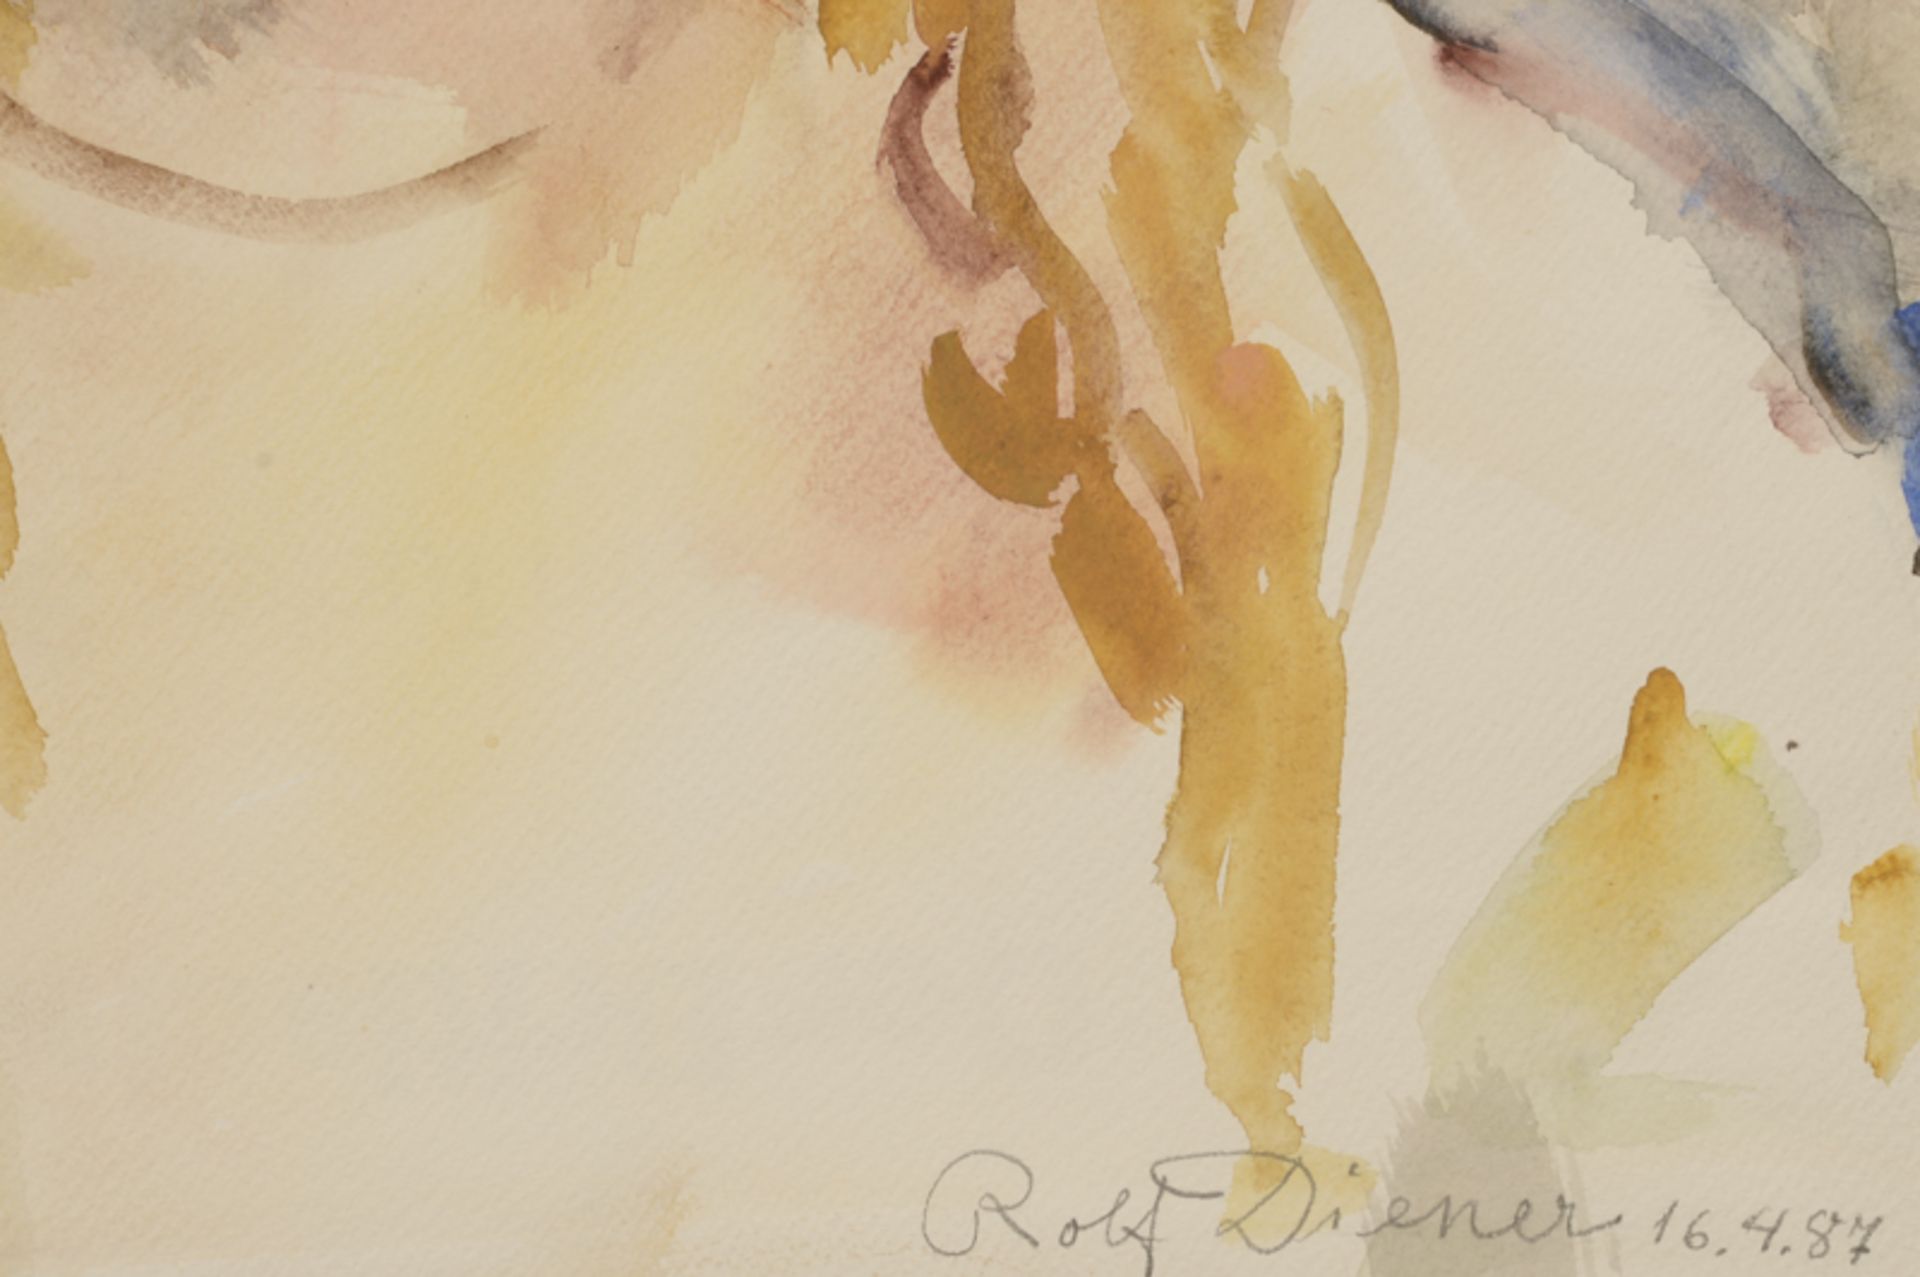 Rolf Diener (1906 - 1988) - Aquarell auf Papier, "Mädchenportrait mit blondem Haar", (19)87unten - Bild 2 aus 2